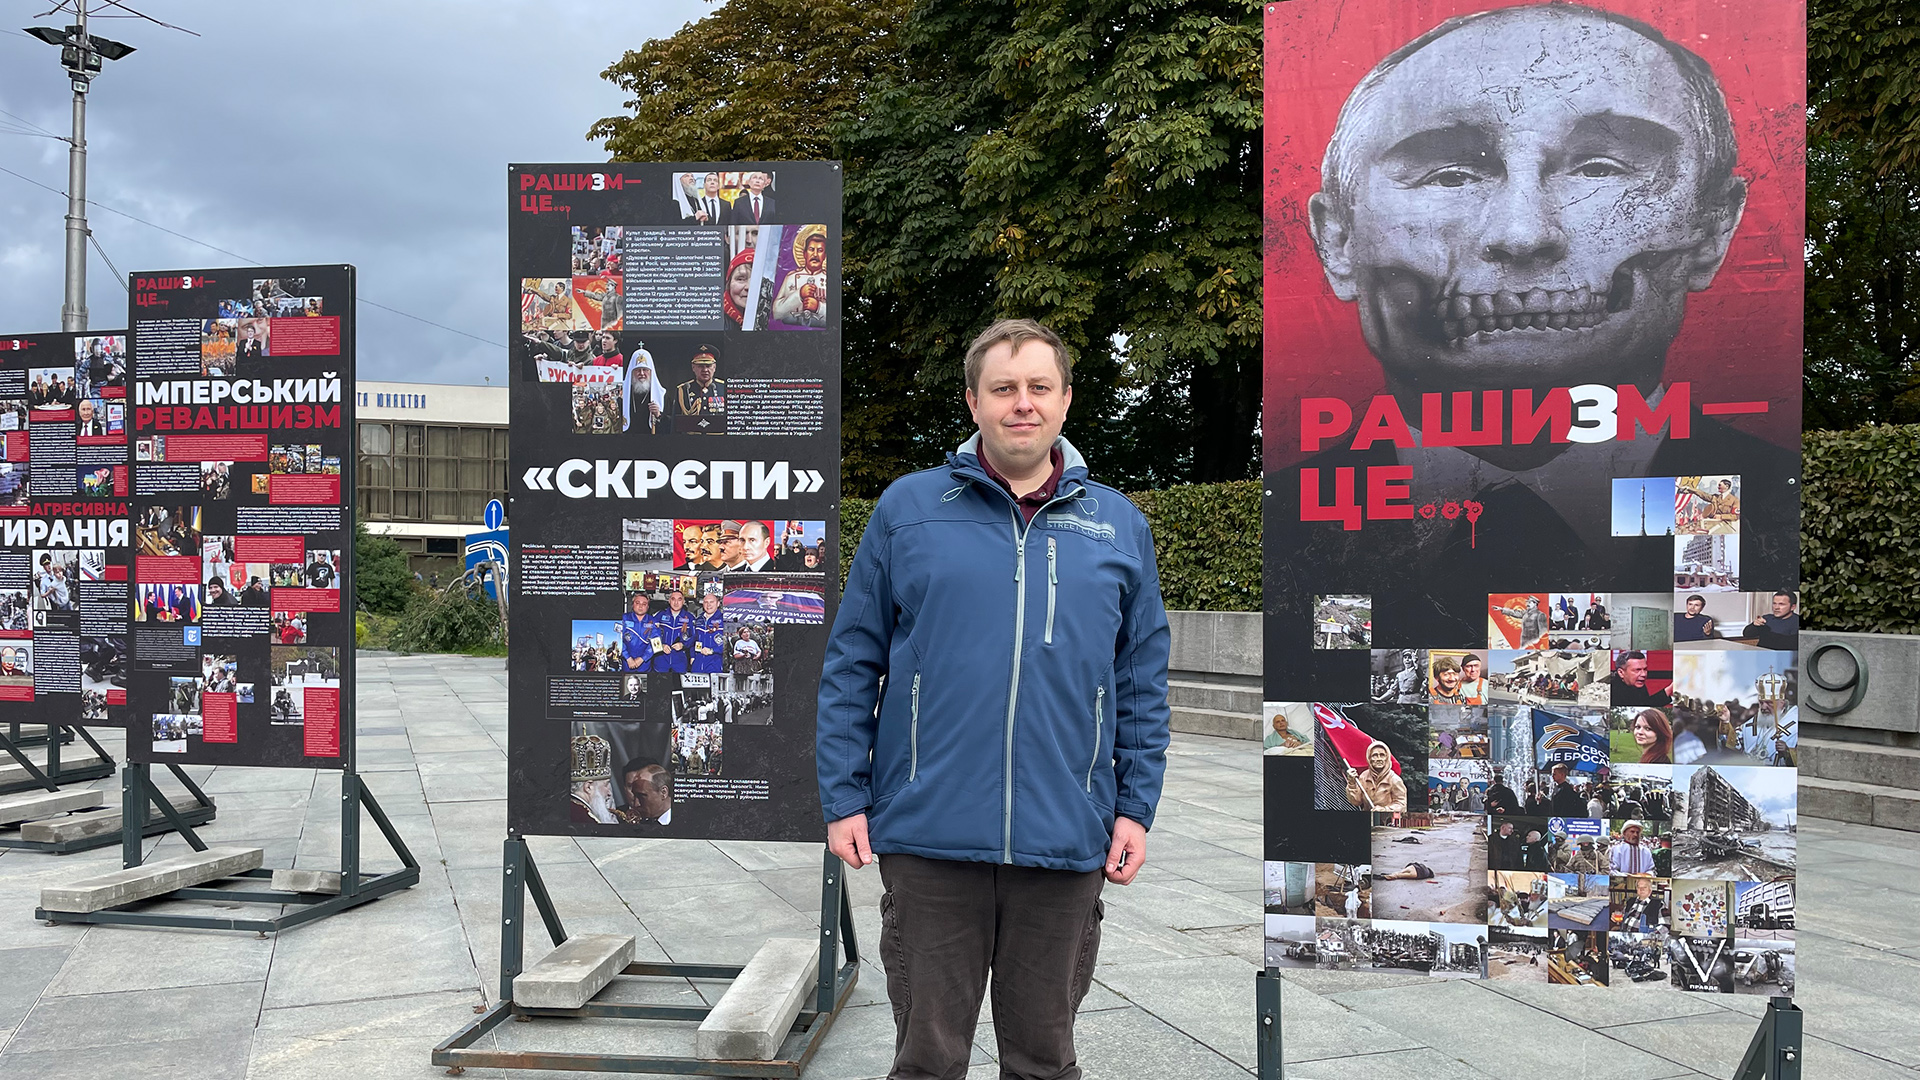 Maksim Majorow vor einer Stellwand mit einem Bild von Putin als Totenkopf verfremdet und der Aufschrift "Raschism"  | Andrea Beer